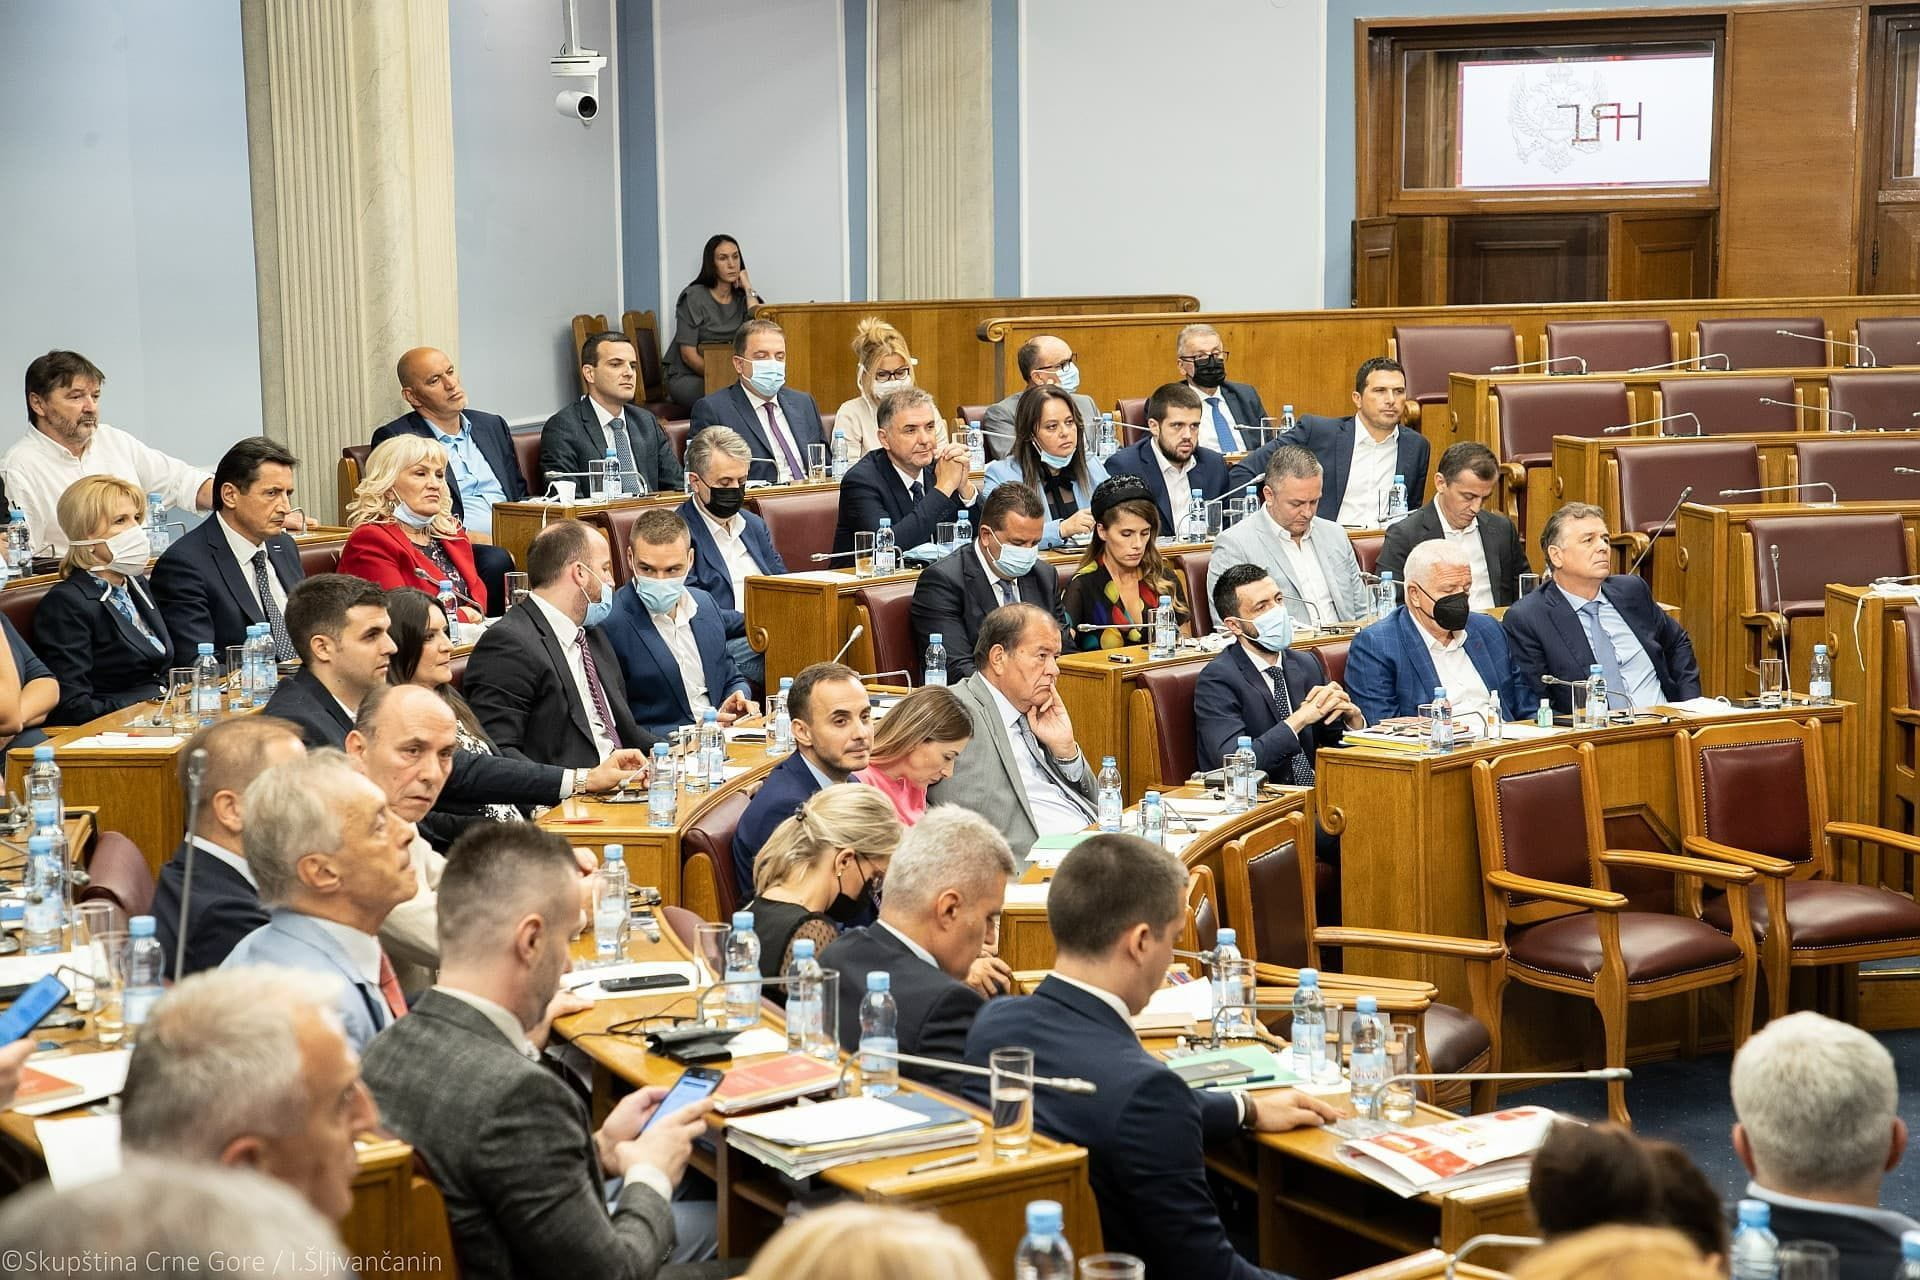 Poslanici usvojili: Zeta dobila status opštine, otvara se parlamentarna istraga o događajima na Cetinju 4. i 5. septembra